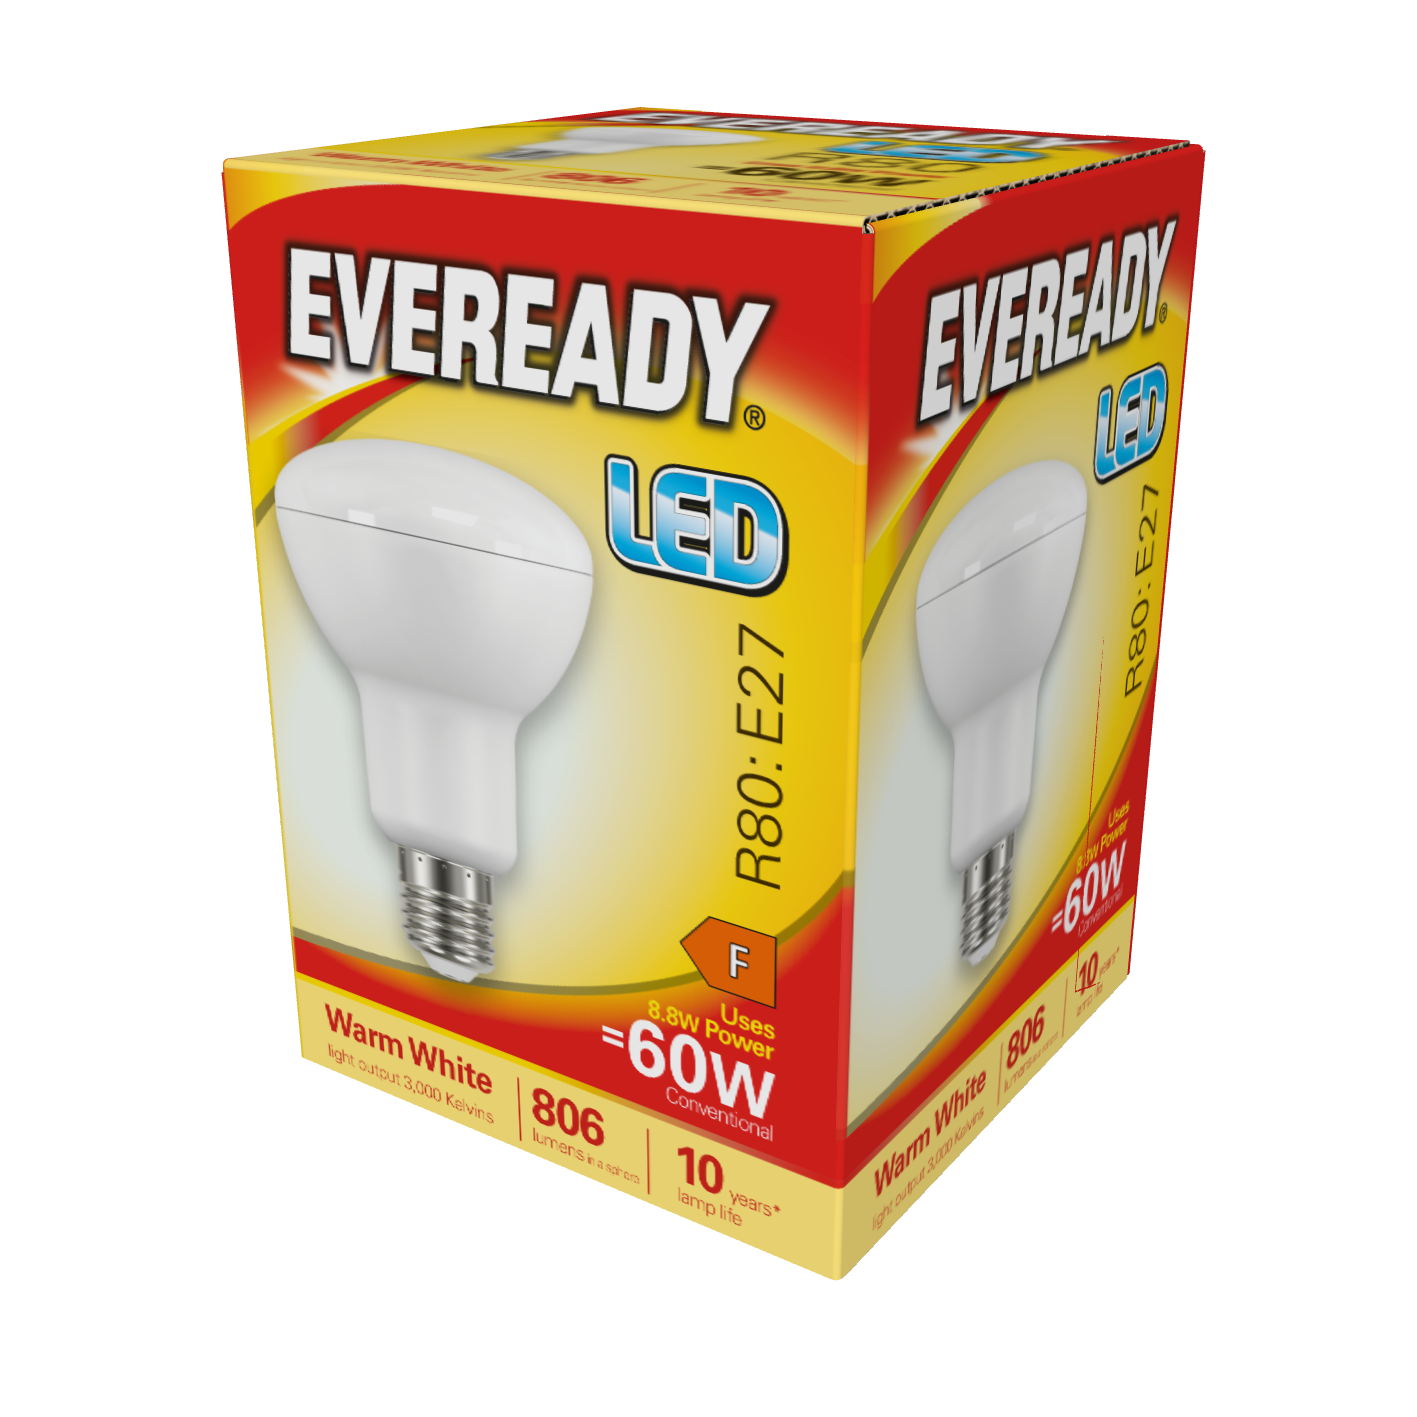 Eveready LED R80 Reflektor E27 (ES) 806lm 8,8W 3.000K (Warmweiß), Packung mit 1 Stück